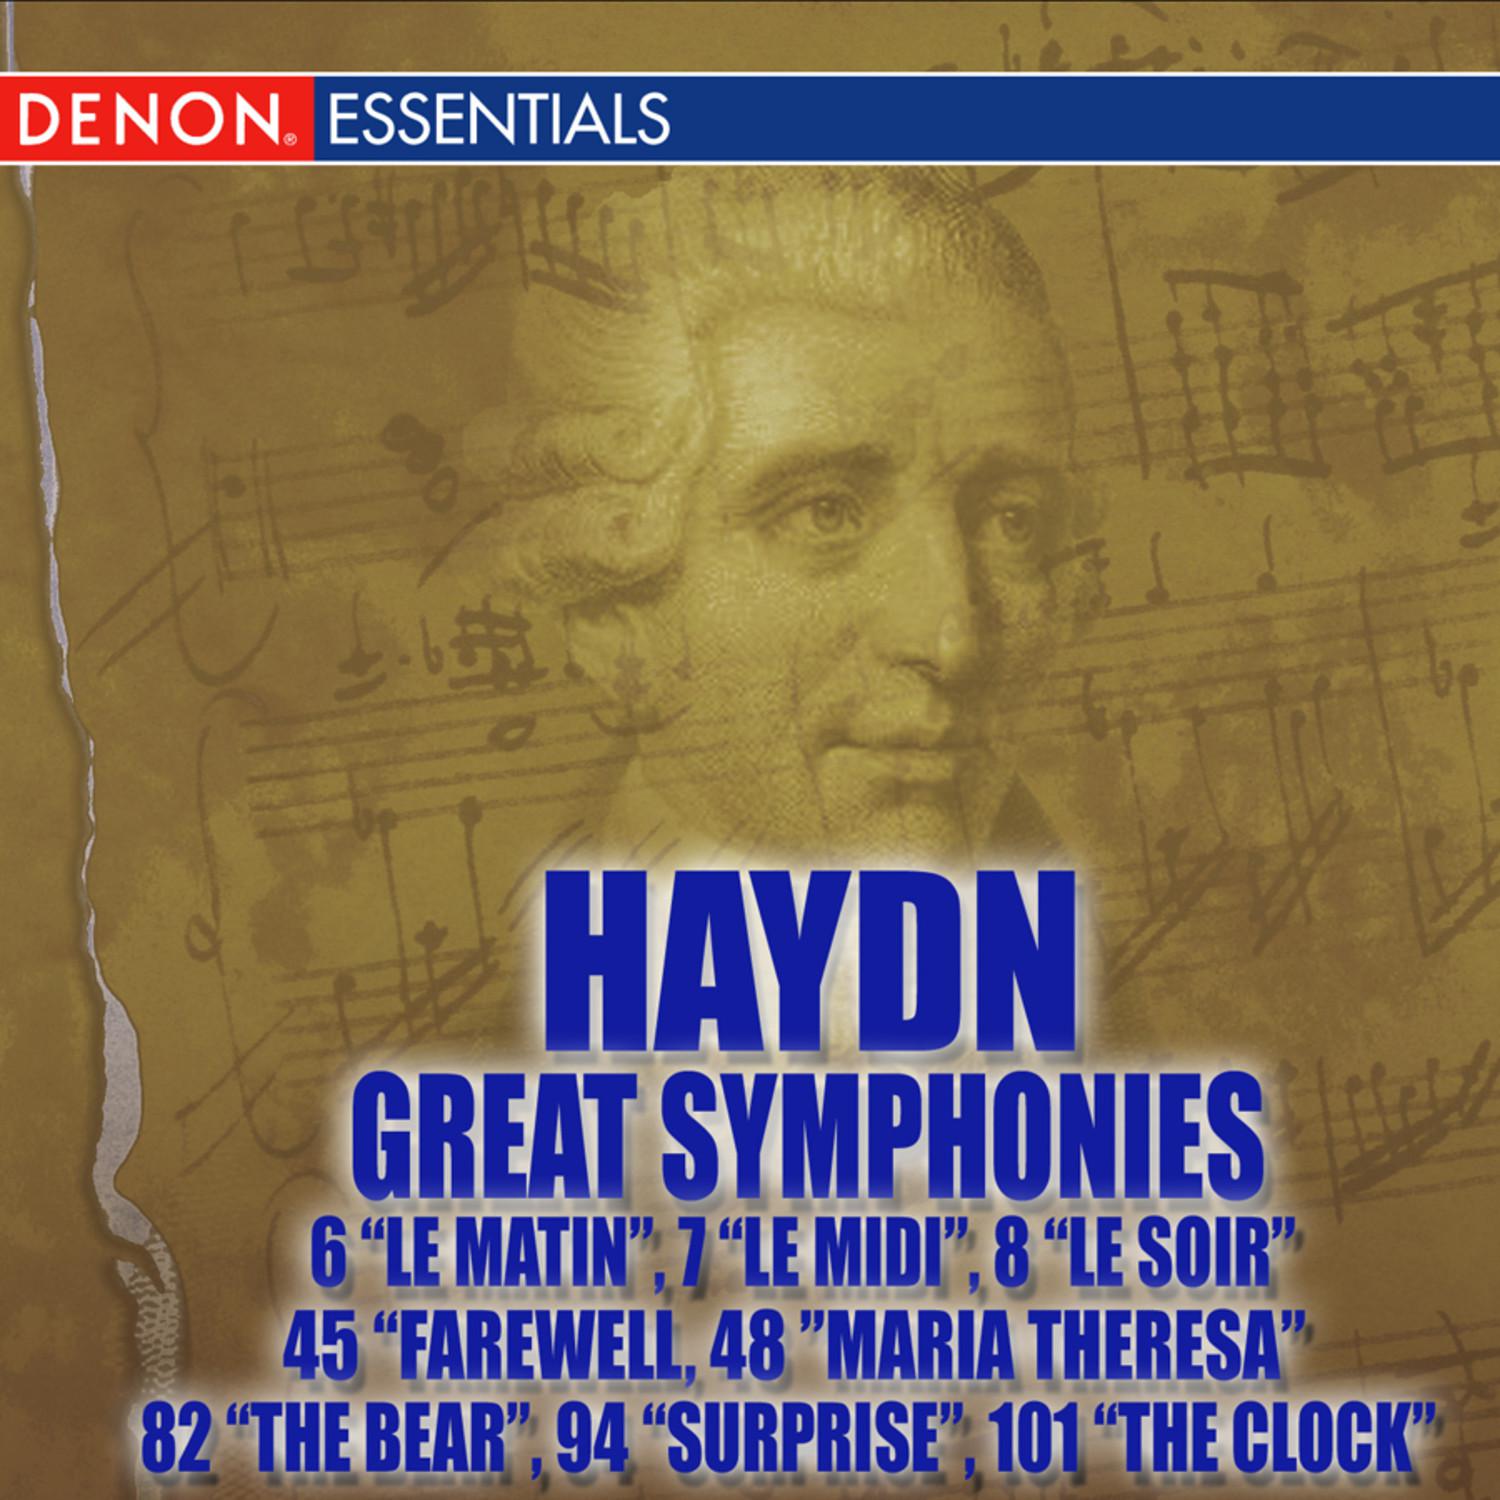 Haydn Symphony No. 8 in G Major "Le soir": I. Allegro molto